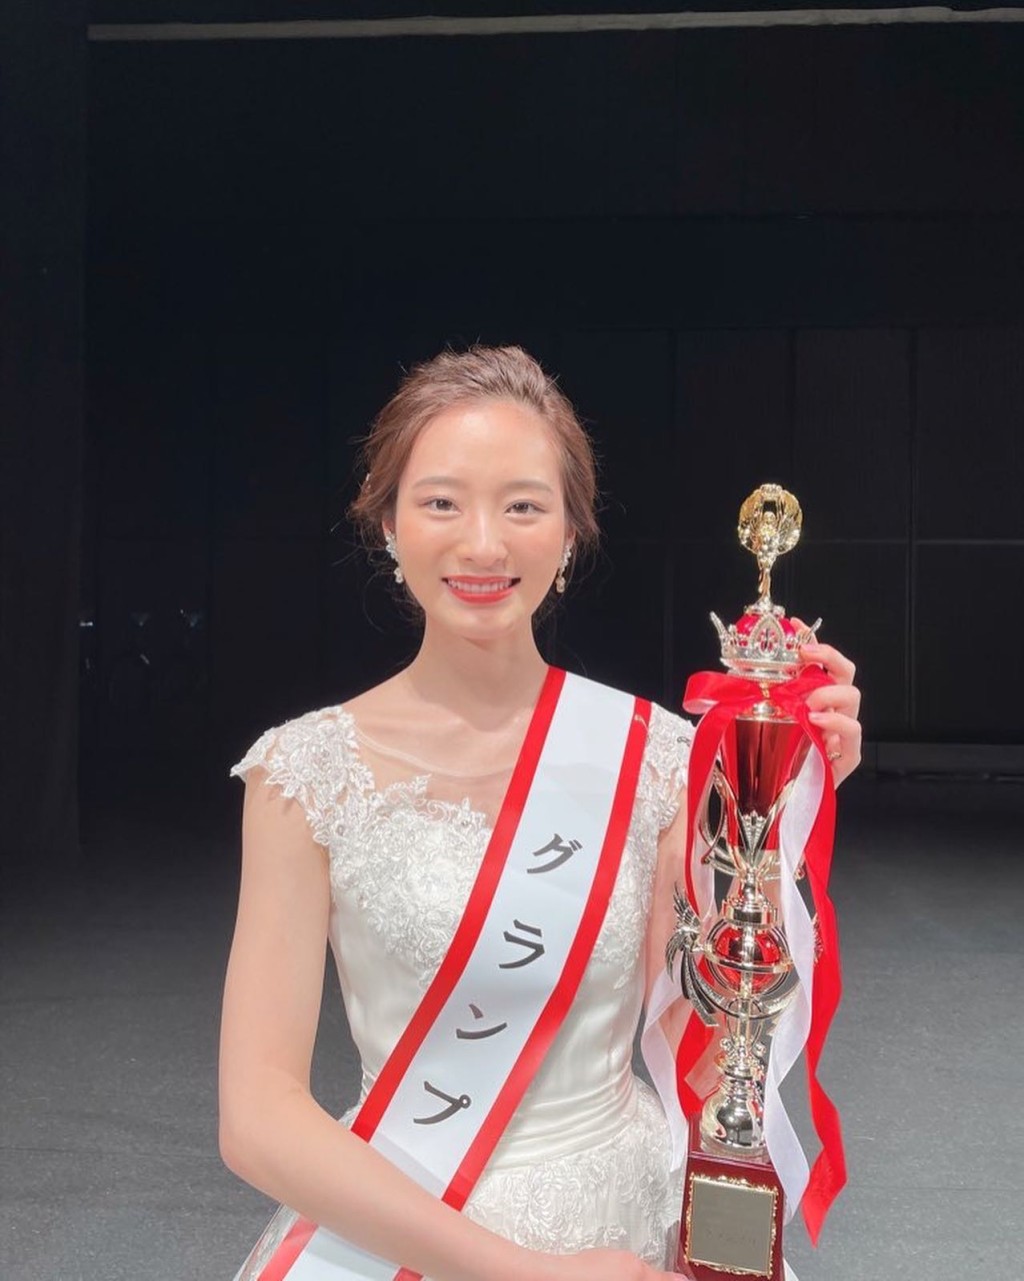 神谷明采在2021年春季获得“Miss of Miss”日本校园美女最大赏。 IG@asa_kamiya